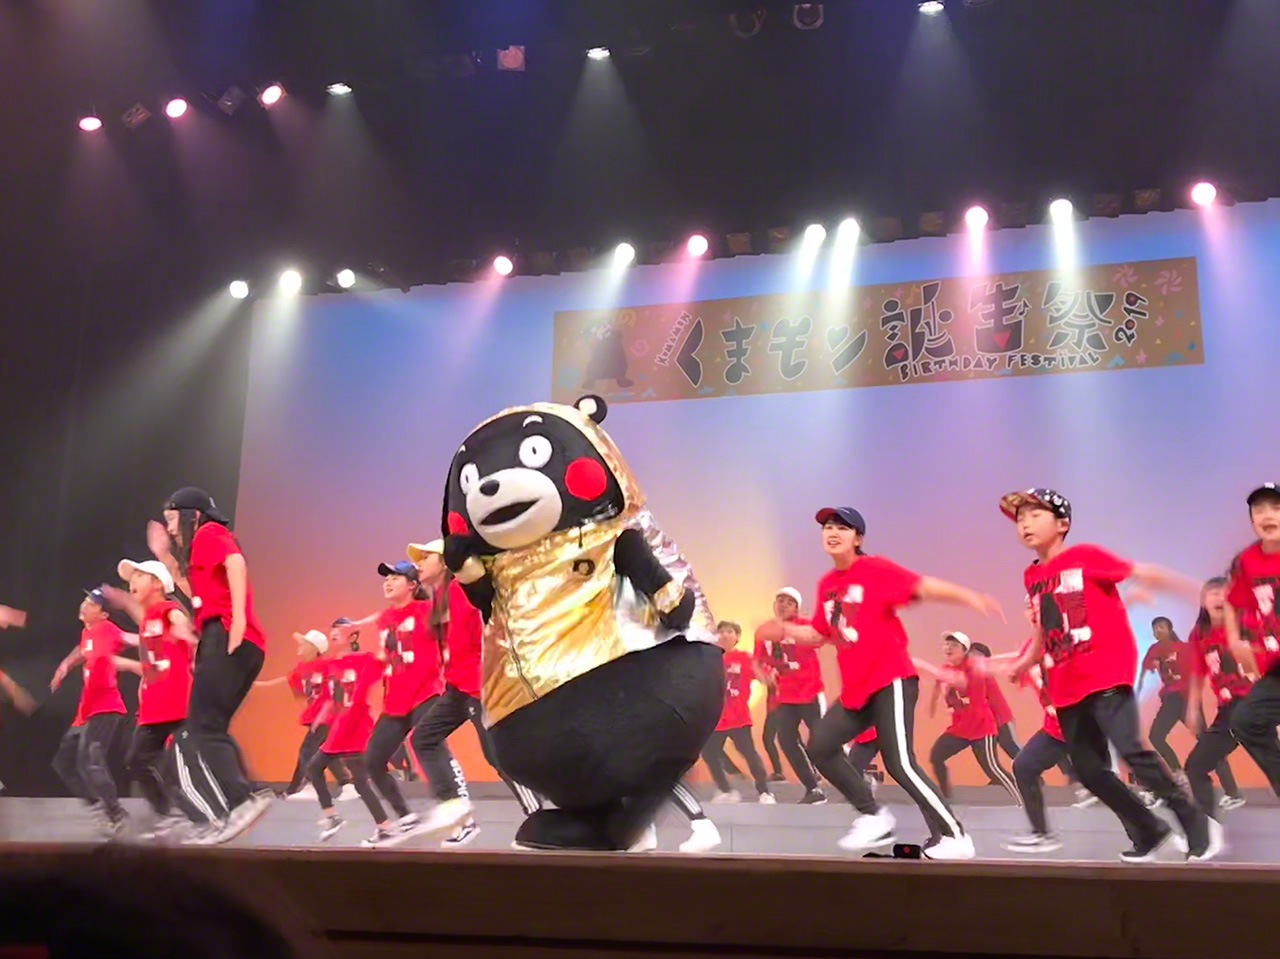 熊本县举办的“熊本熊诞生祭2019”，在熊本市民会馆的舞台上载歌载舞的熊本熊（图片：熊本县，摄于2019年3月10日）